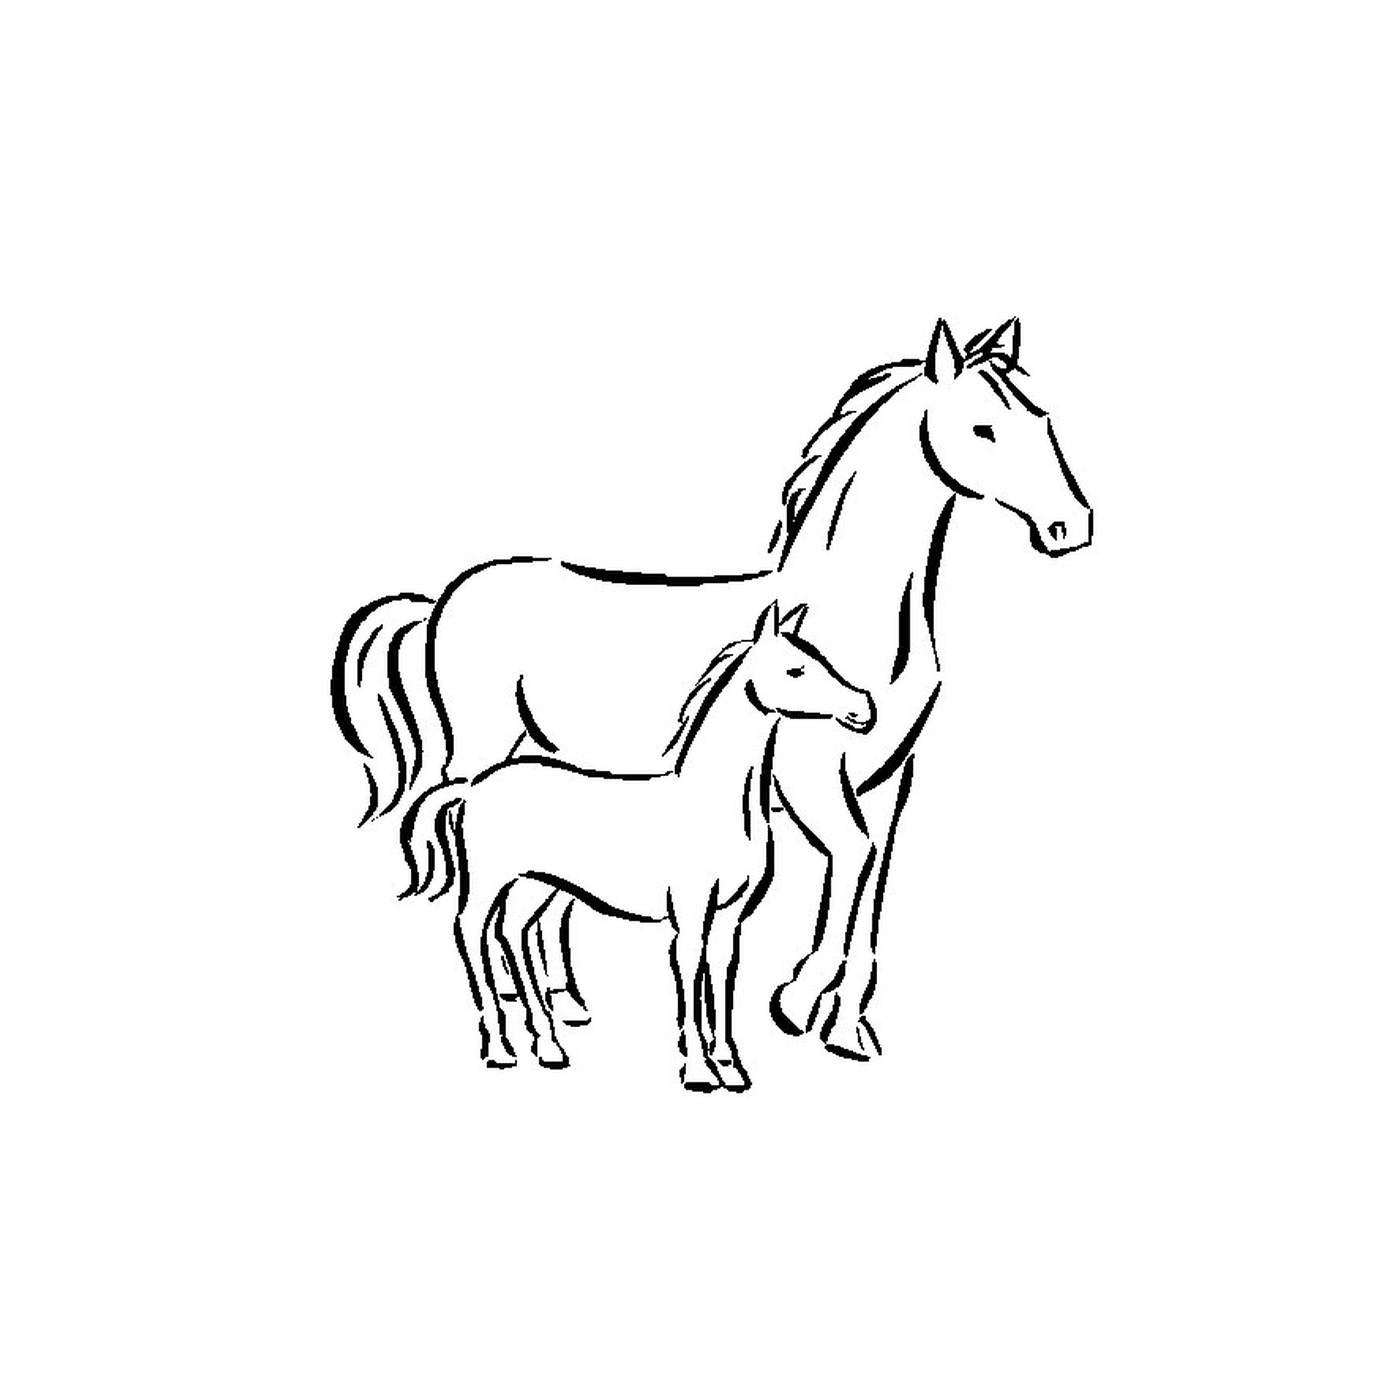  Caballos - Un caballo y un potro de pie lado a lado 